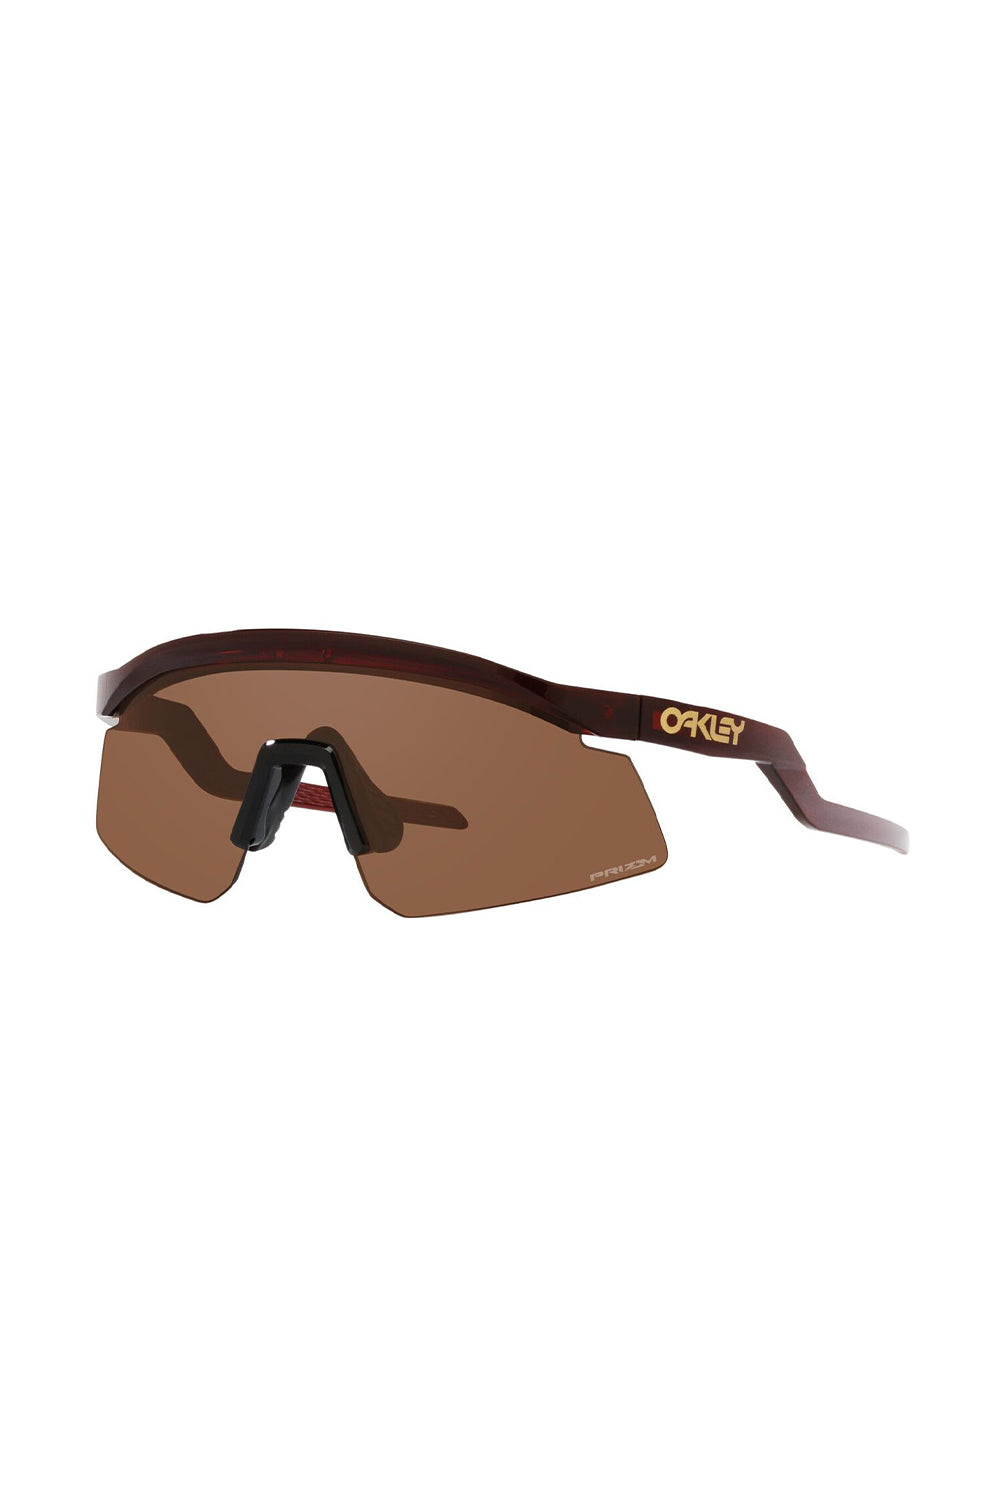 Oakley OO9061 M FRAME HYBRID S 11-142 Sunglasses | VisionDirect Australia